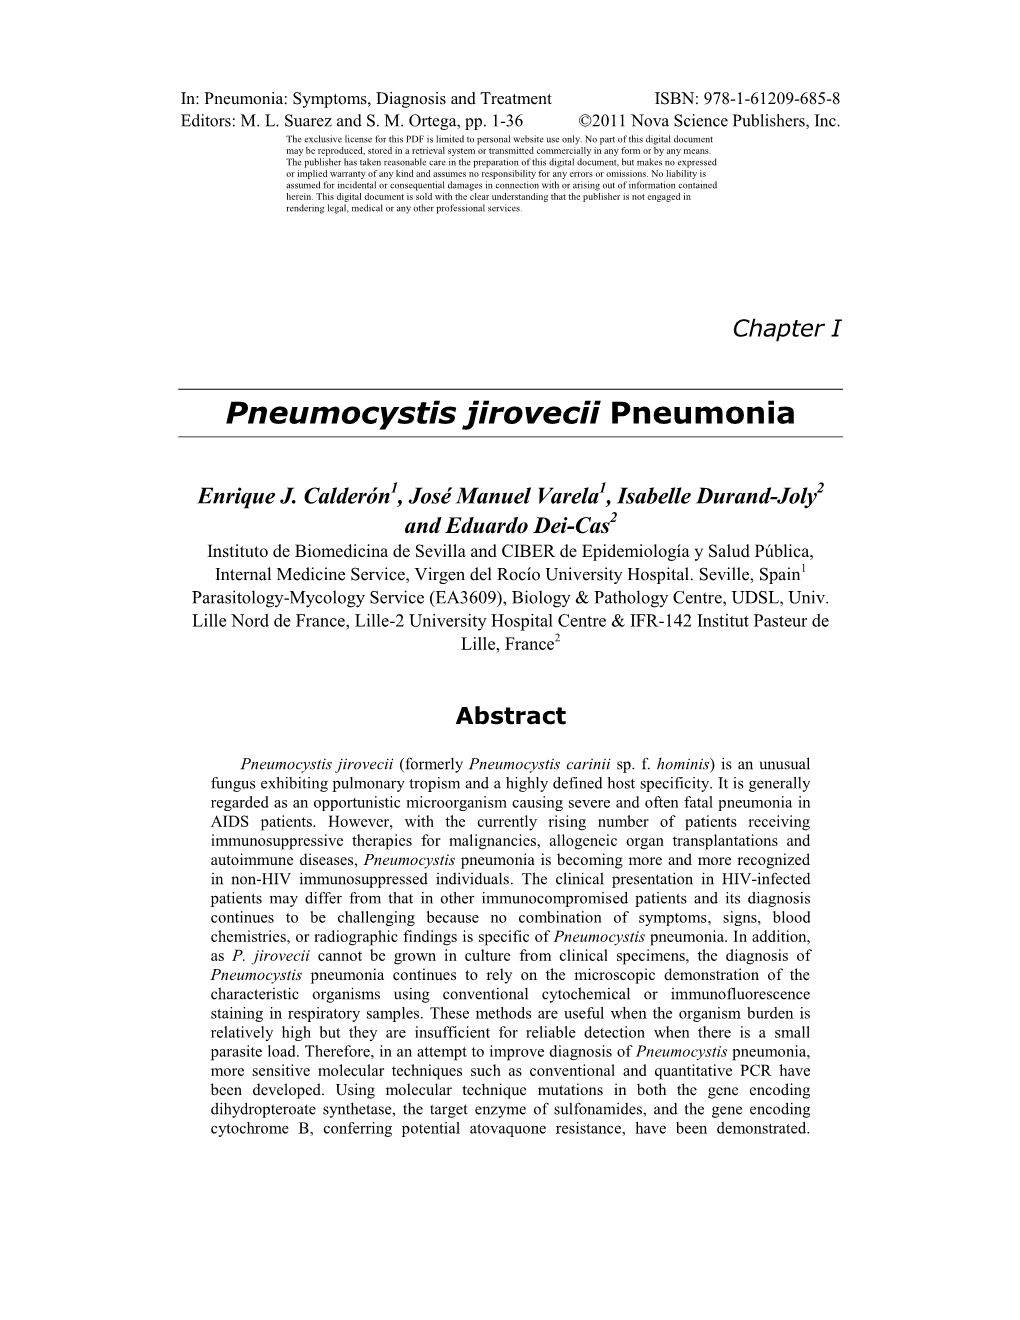 Pneumocystis Jirovecii Pneumonia